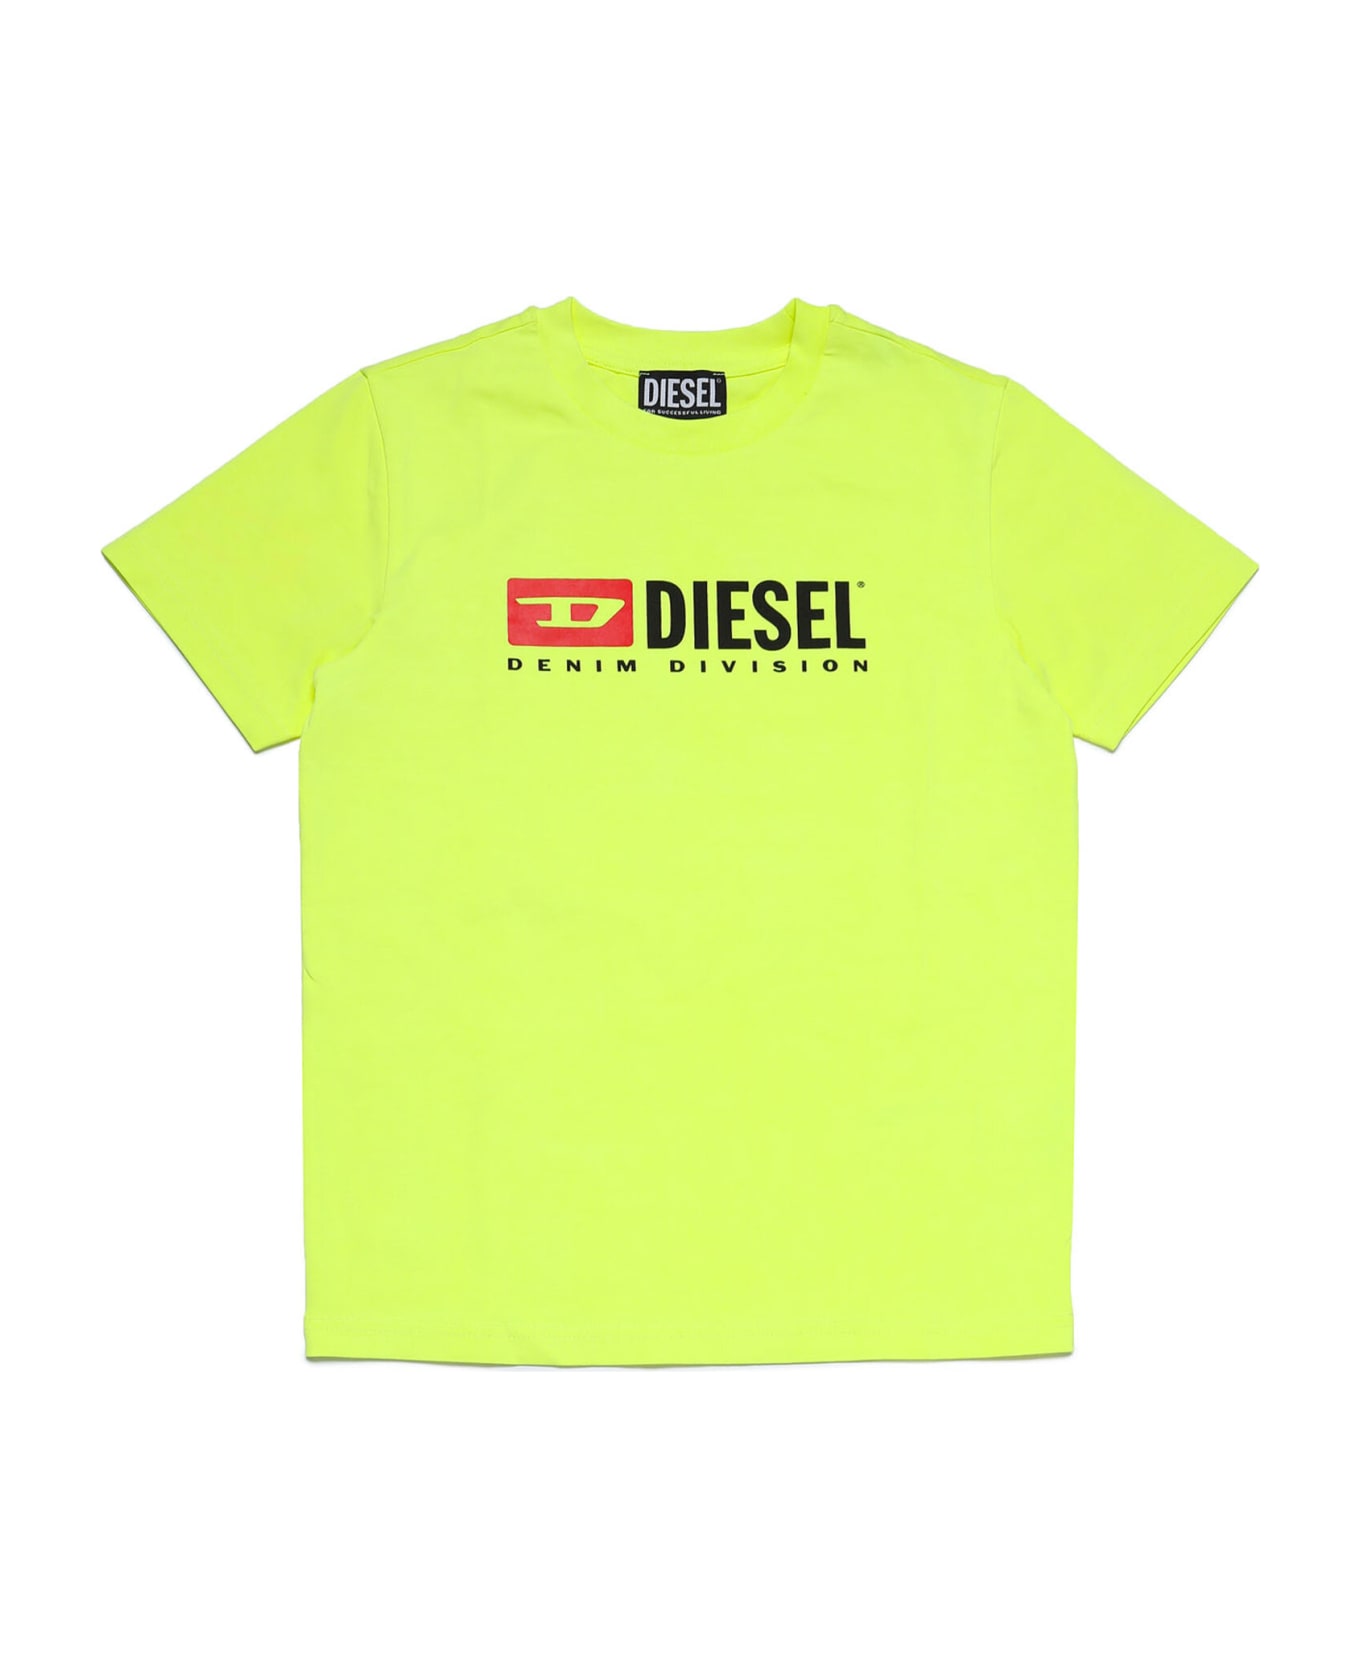 Diesel Unjulio Mc Pyjama Diesel - Yellow fluo